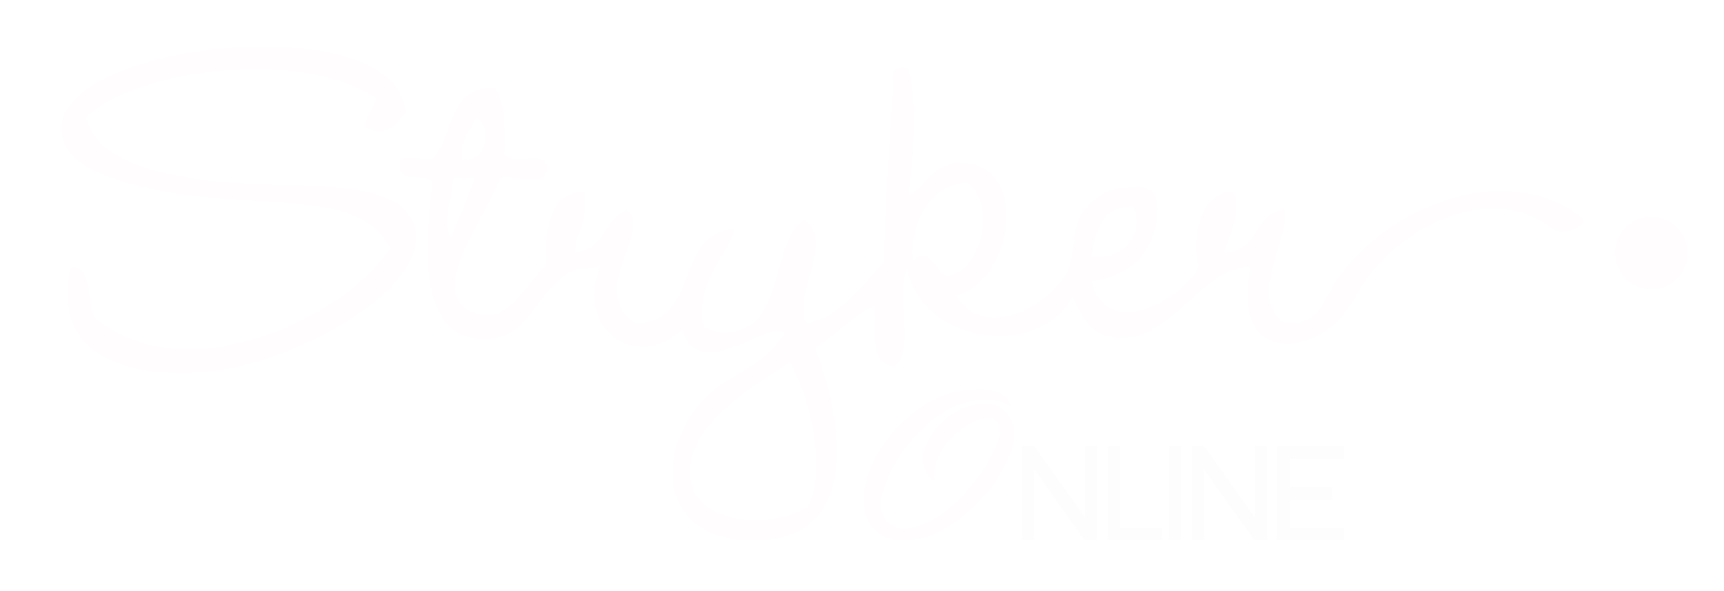 Stryker Online Marketing